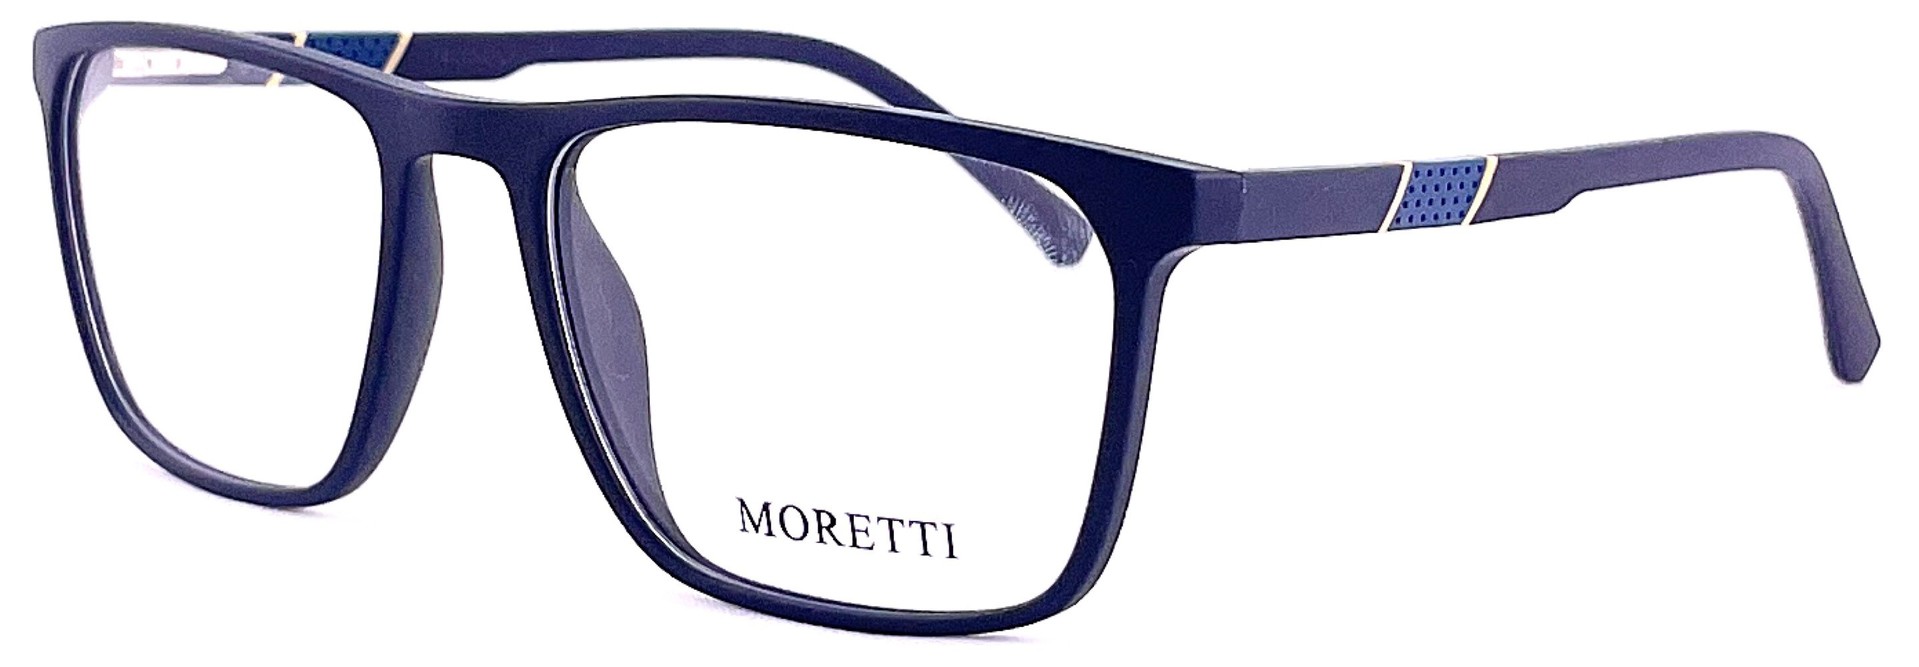 Moretti MF01-01 C.06 2